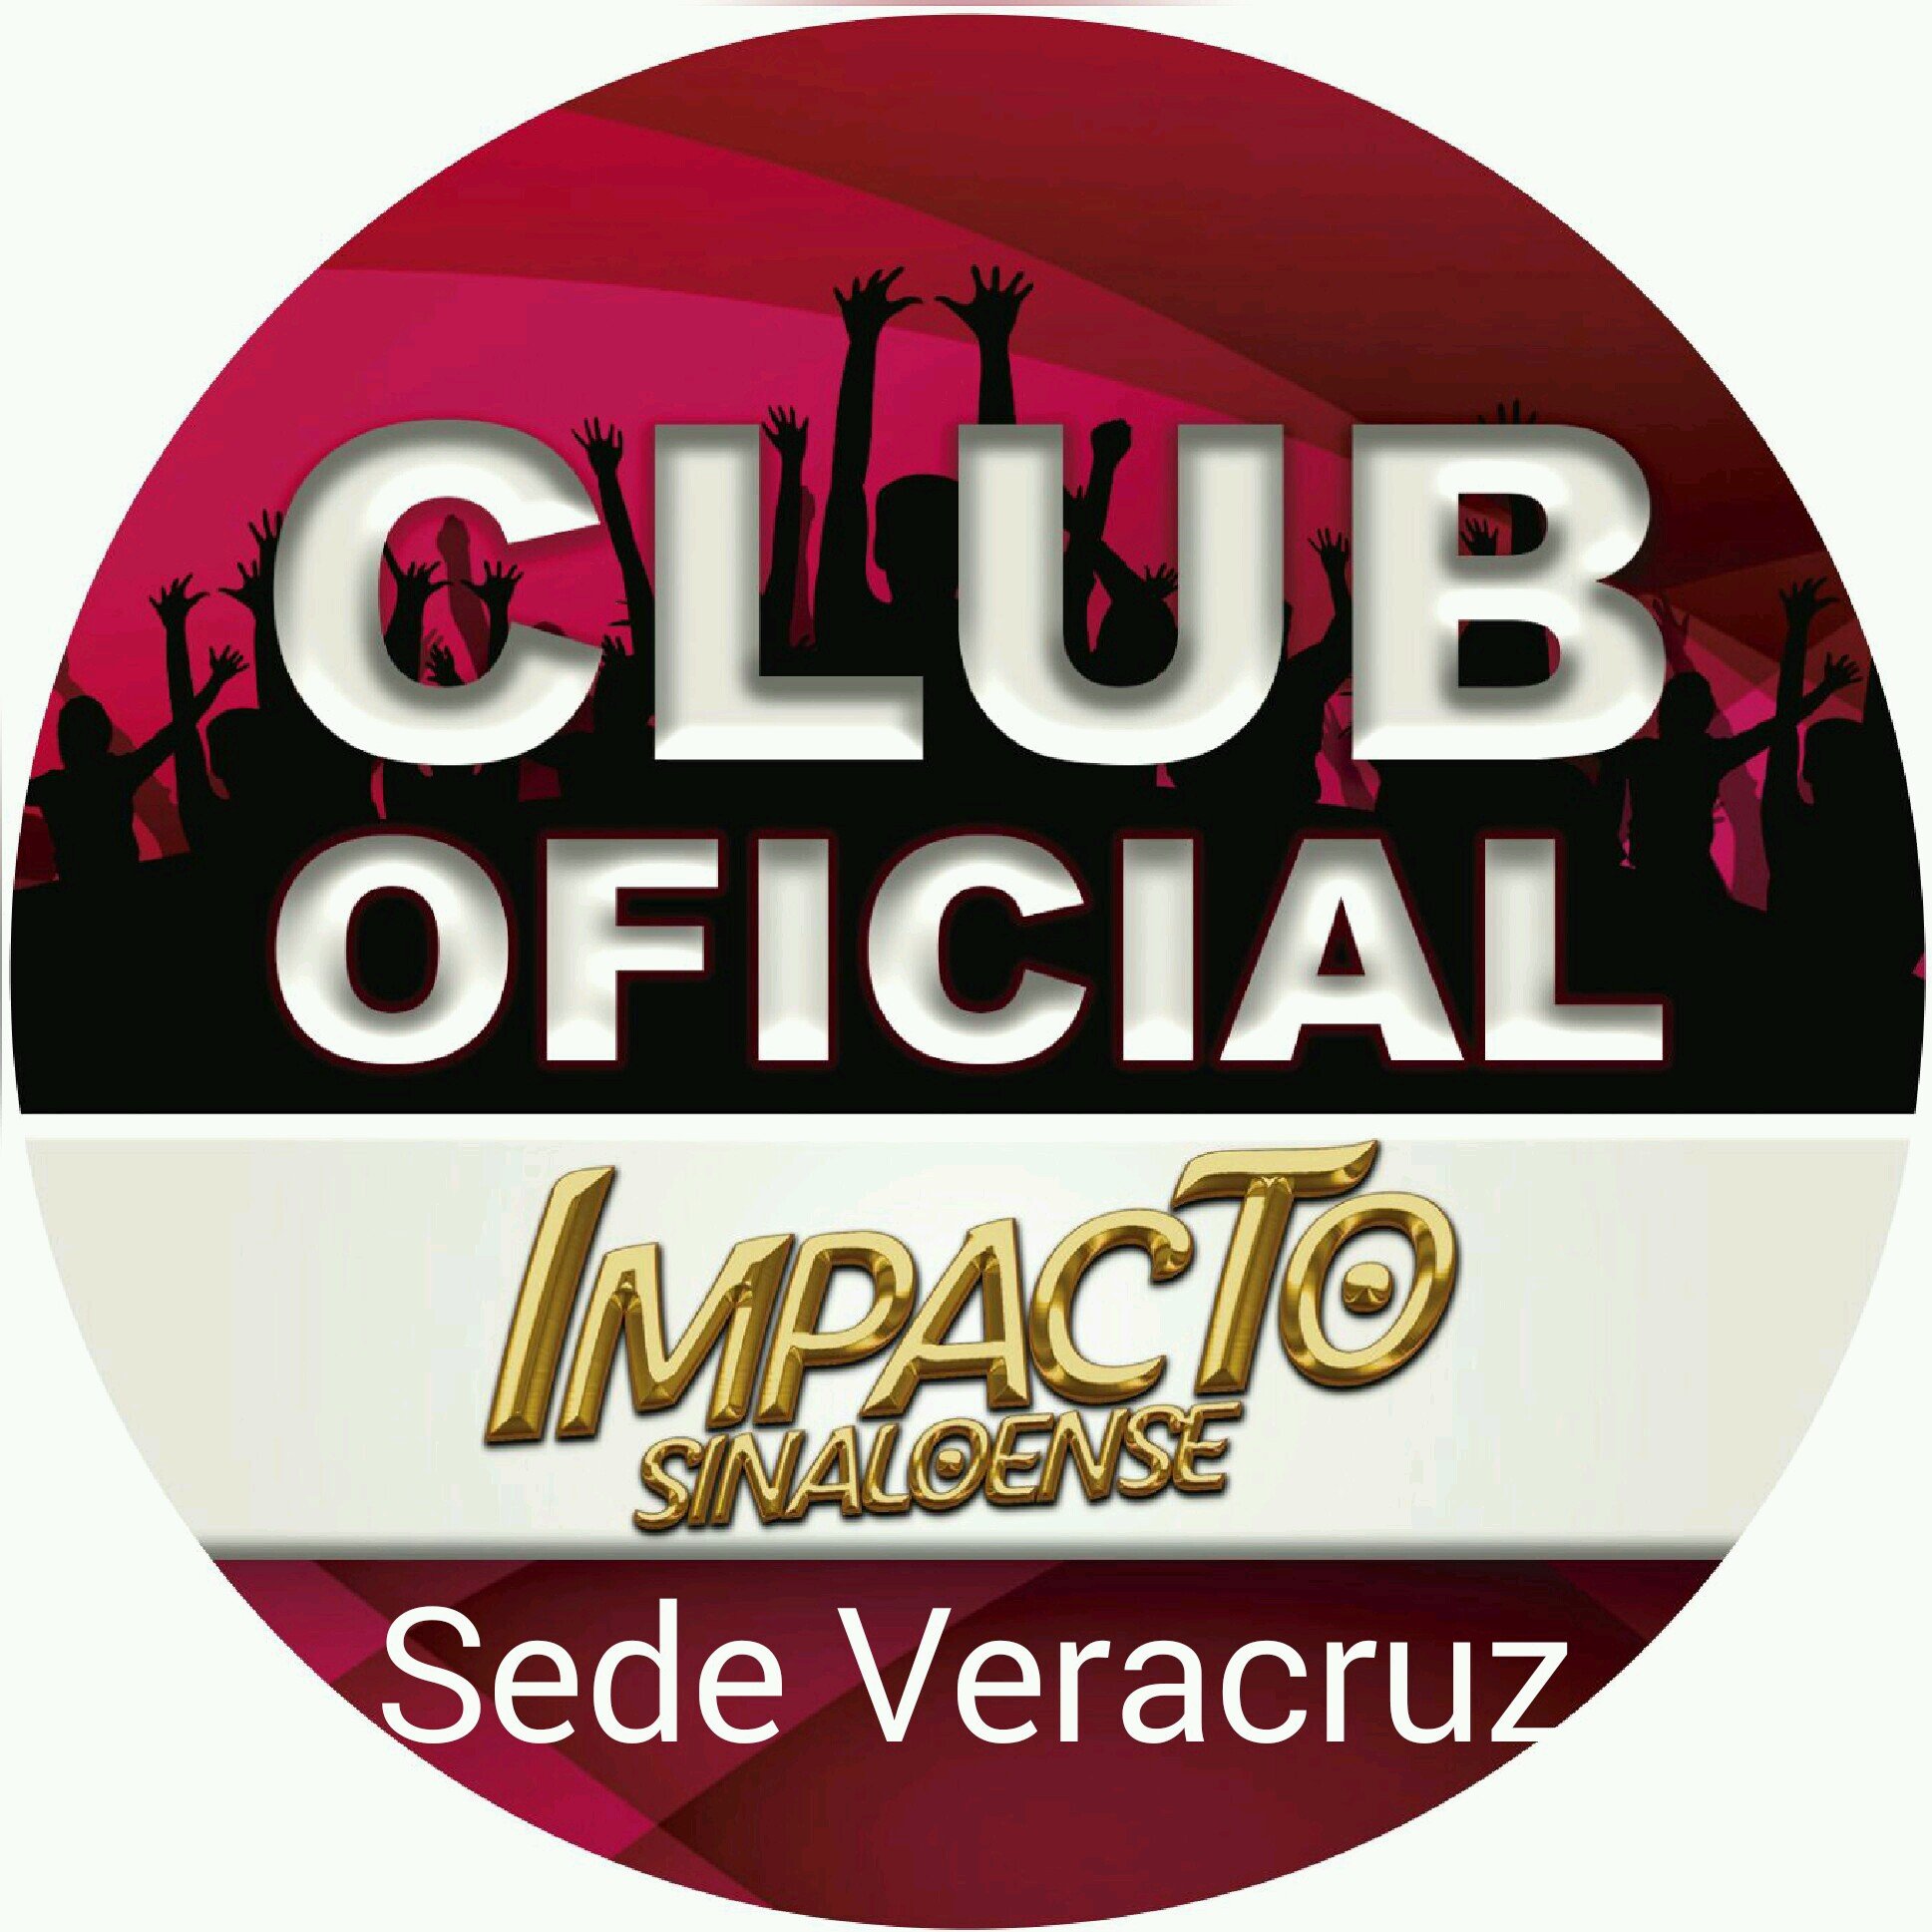 Club dedicado a Impacto Sinaloense sede Veracruz..... Bienvenidos a esta gran familia